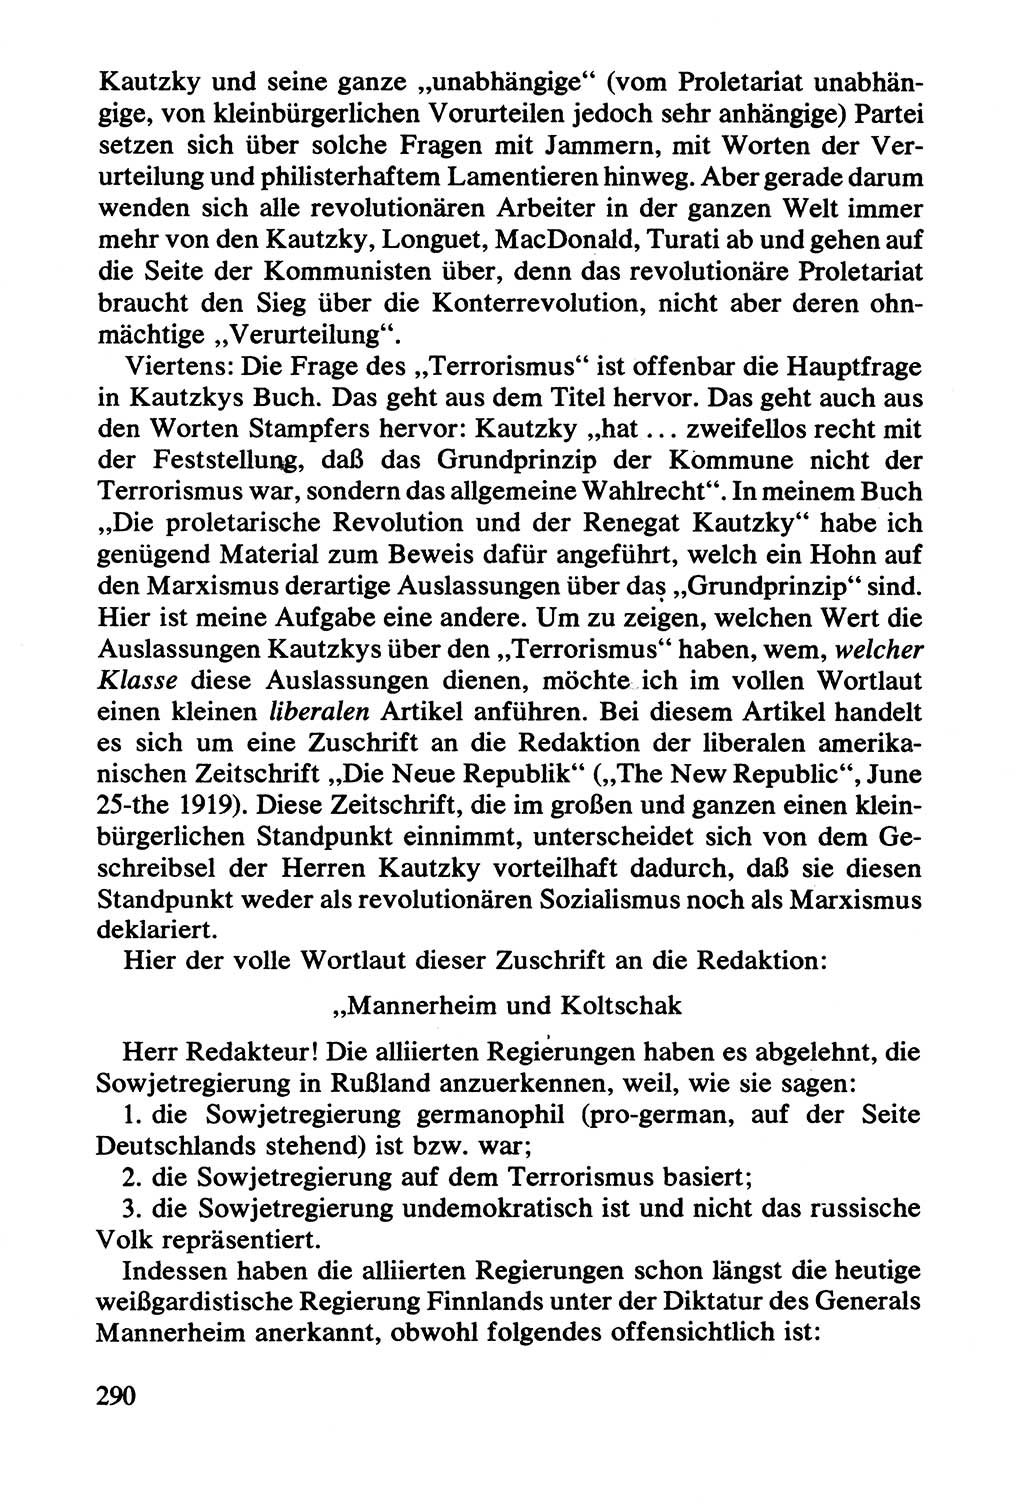 Lenin und die Gesamtrussische Tscheka, Dokumentensammlung, Ministerium für Staatssicherheit (MfS) [Deutsche Demokratische Republik (DDR)], Juristische Hochschule (JHS) Potsdam 1977, Seite 290 (Tscheka Dok. MfS DDR 1977, S. 290)